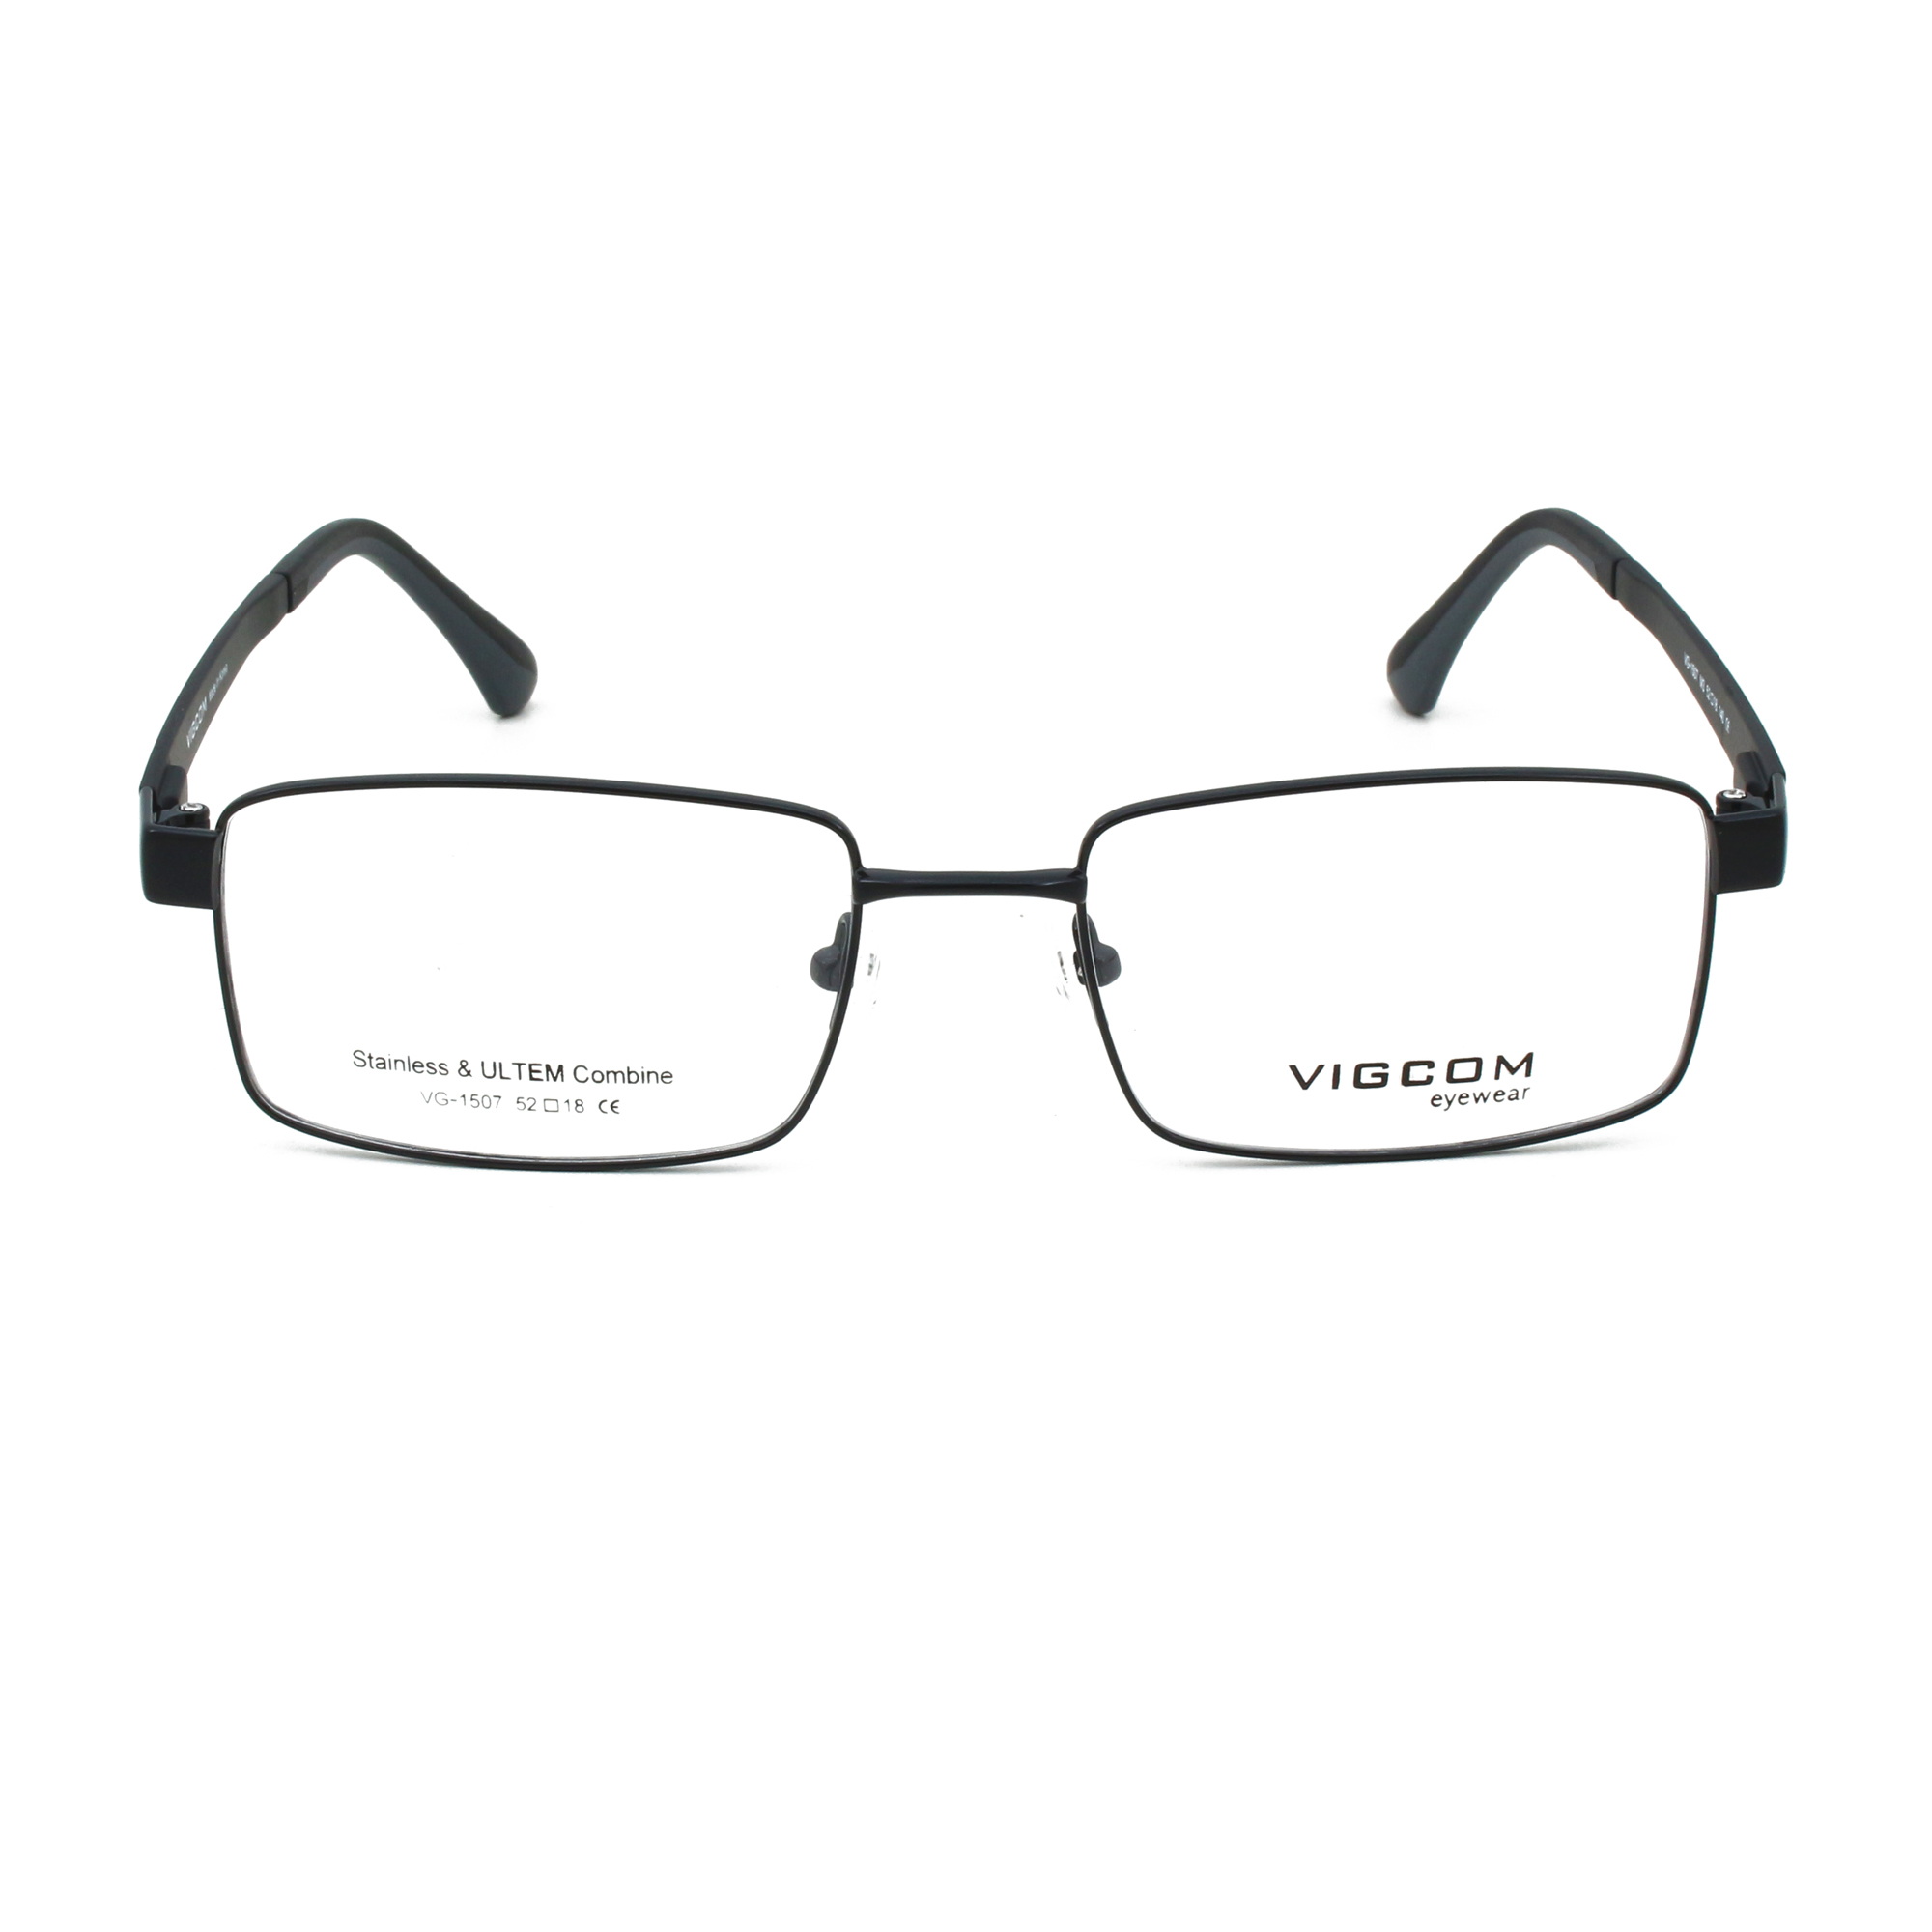 Gọng kính nam VIGCOM VG1507 thời trang (size 52/18/140)